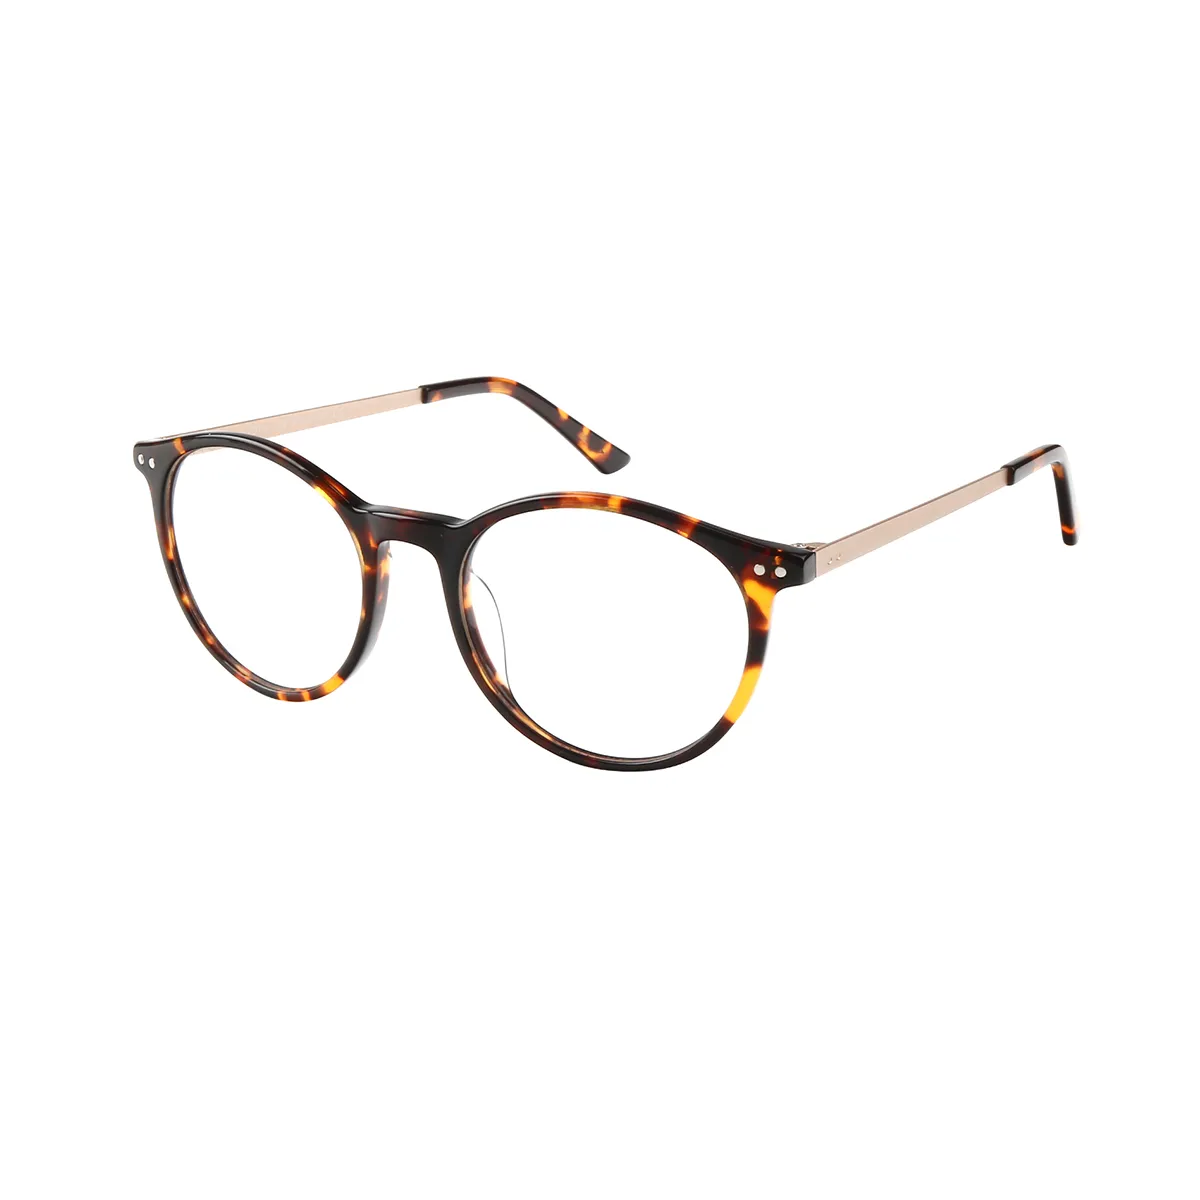 Kenna - Oval Tortoiseshell Glasses for Men & Women - EFE